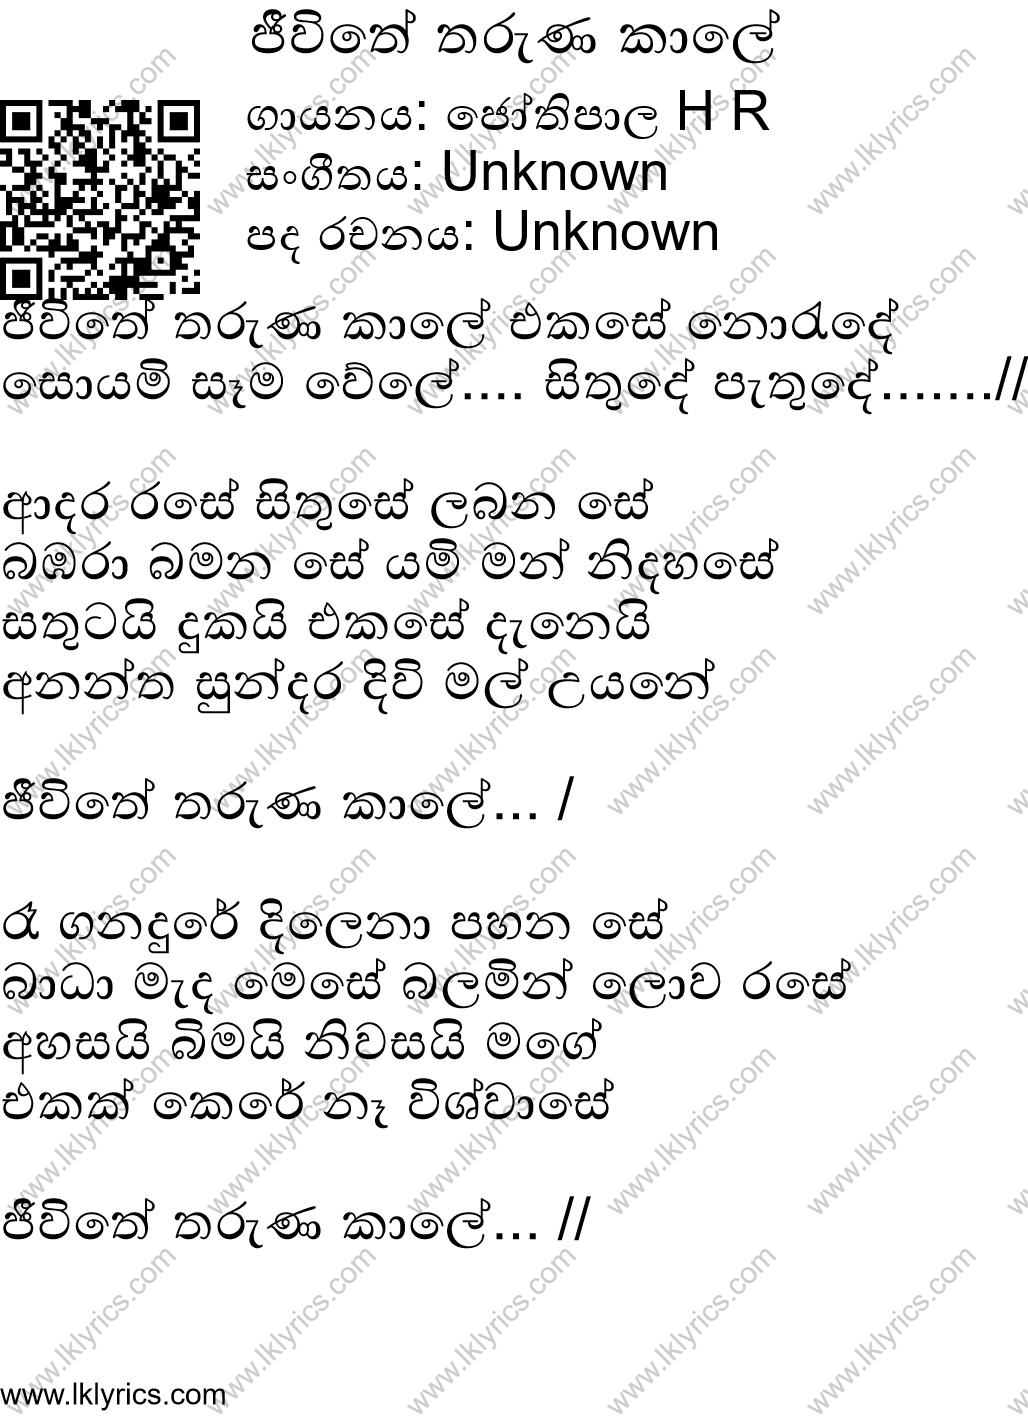 Jeewithe Tharunakale Lyrics